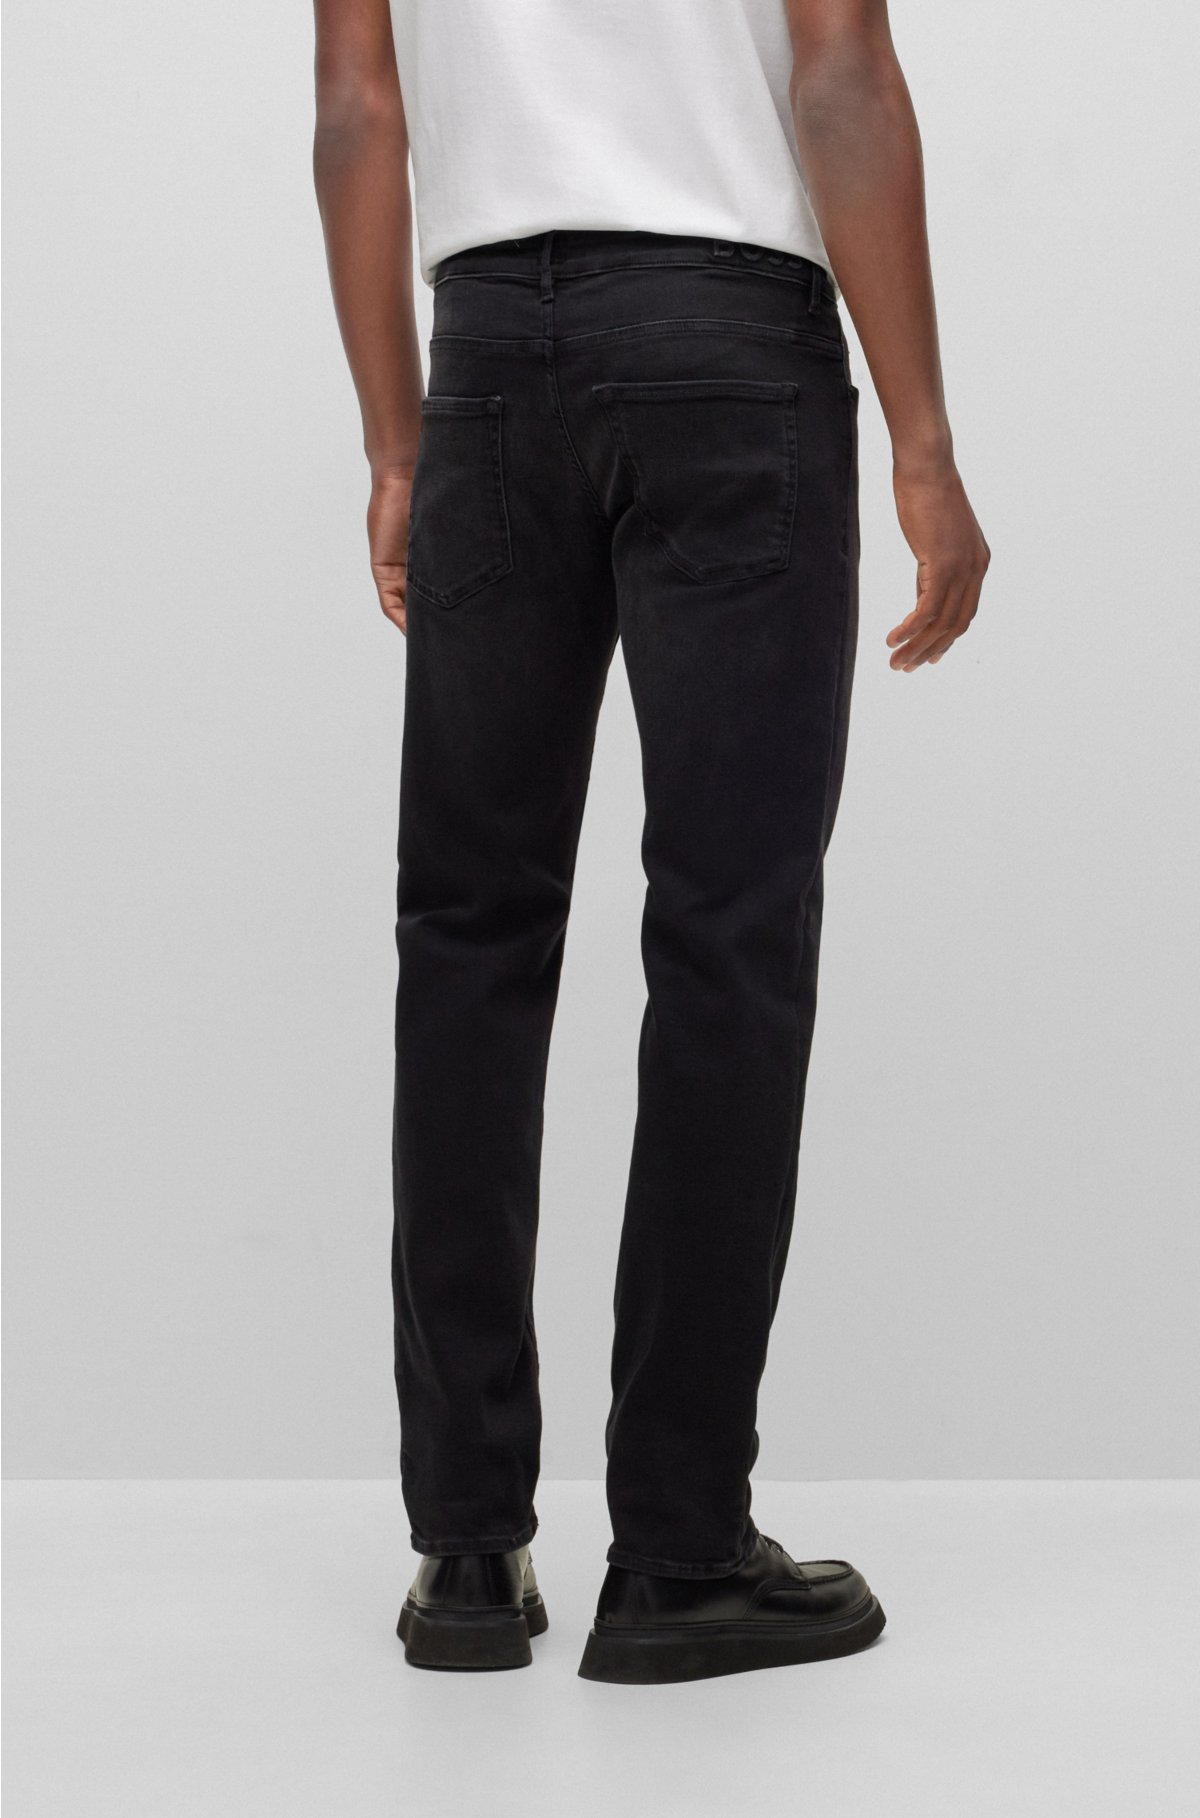 Slim-fit jeans in black-black supreme-movement denim